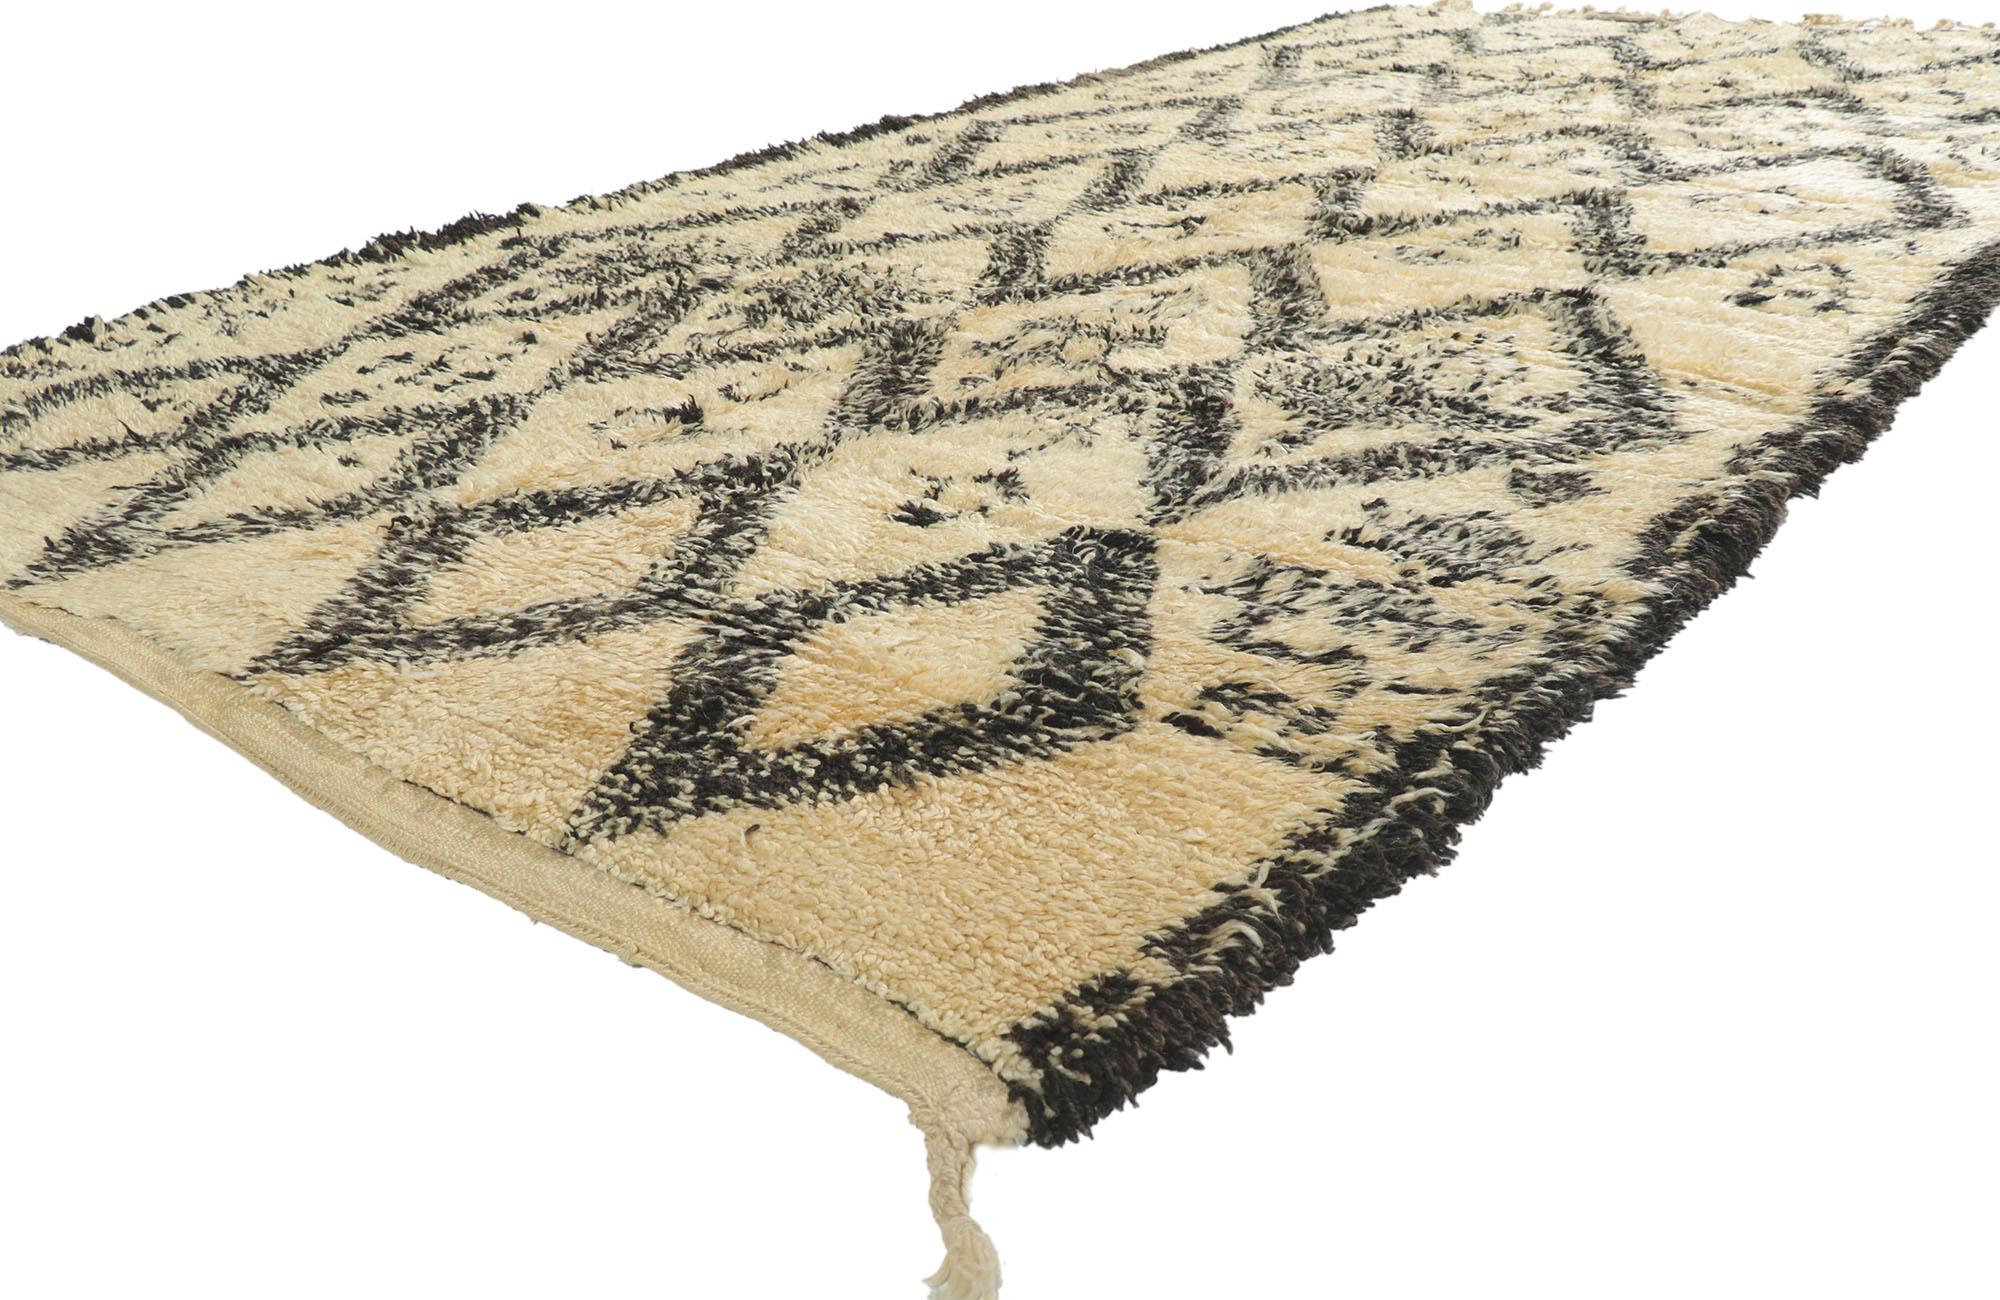 21357 Marokkanischer Vintage-Teppich Beni Ourain, 06'00 x 11'05. Mit seiner Schlichtheit, dem weichen Flor und dem Stammesstil ist dieser handgeknüpfte marokkanische Berberteppich Beni Ourain aus Wolle eine fesselnde Vision gewebter Schönheit. Es